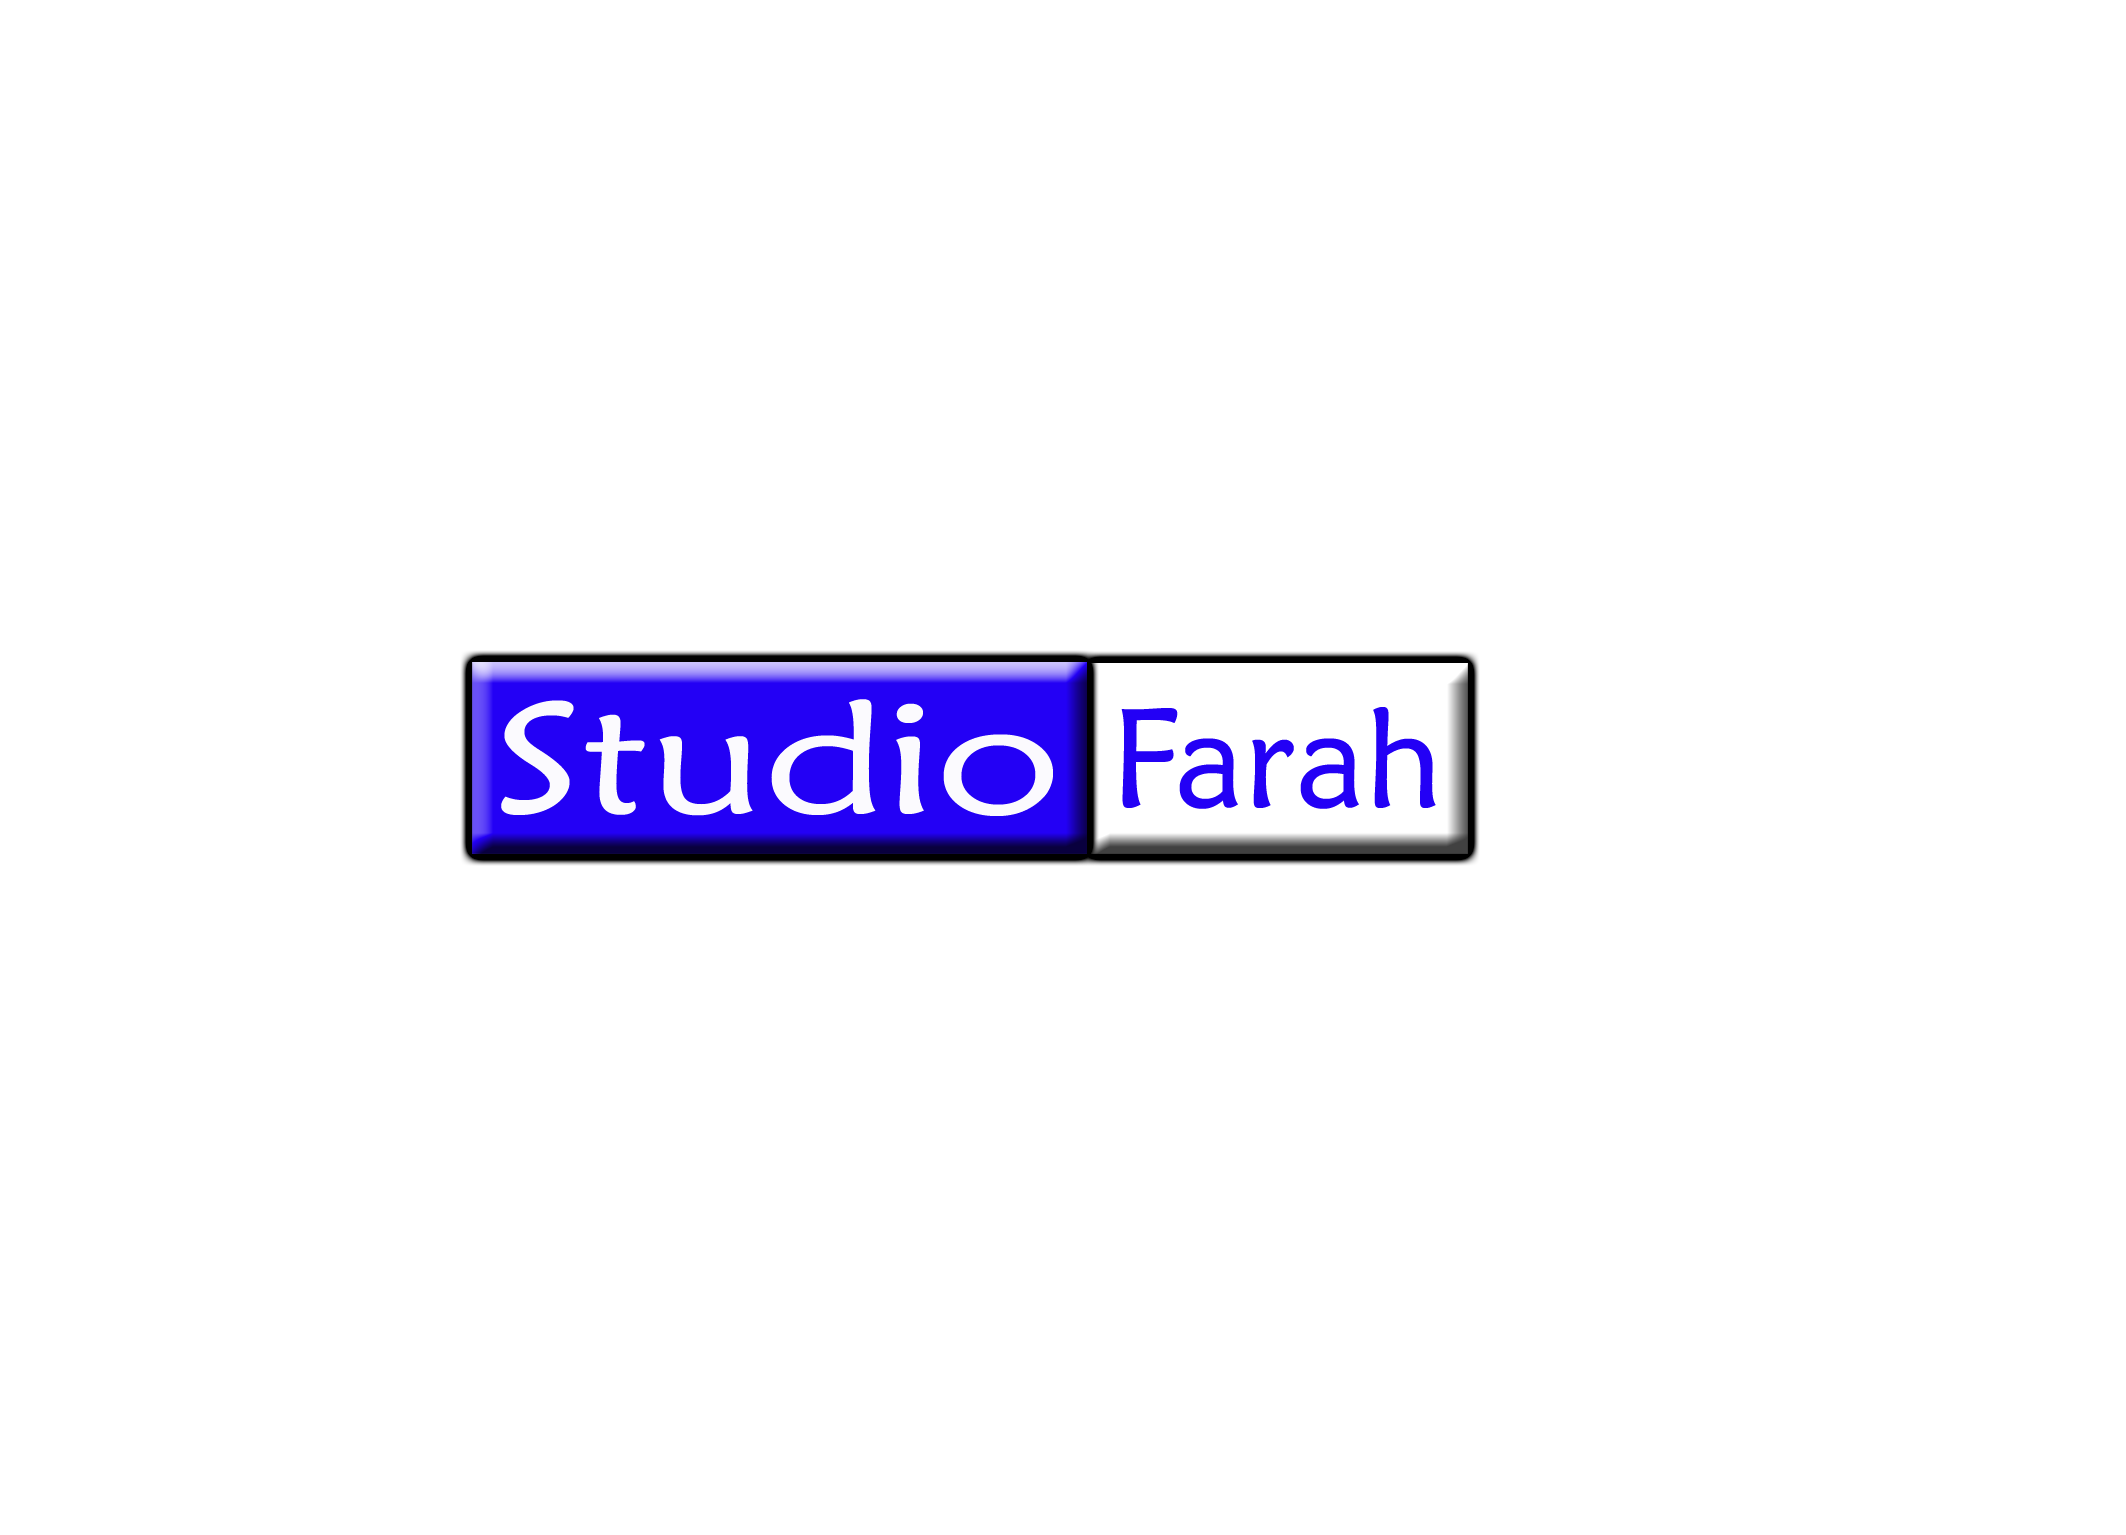 Studio Farah